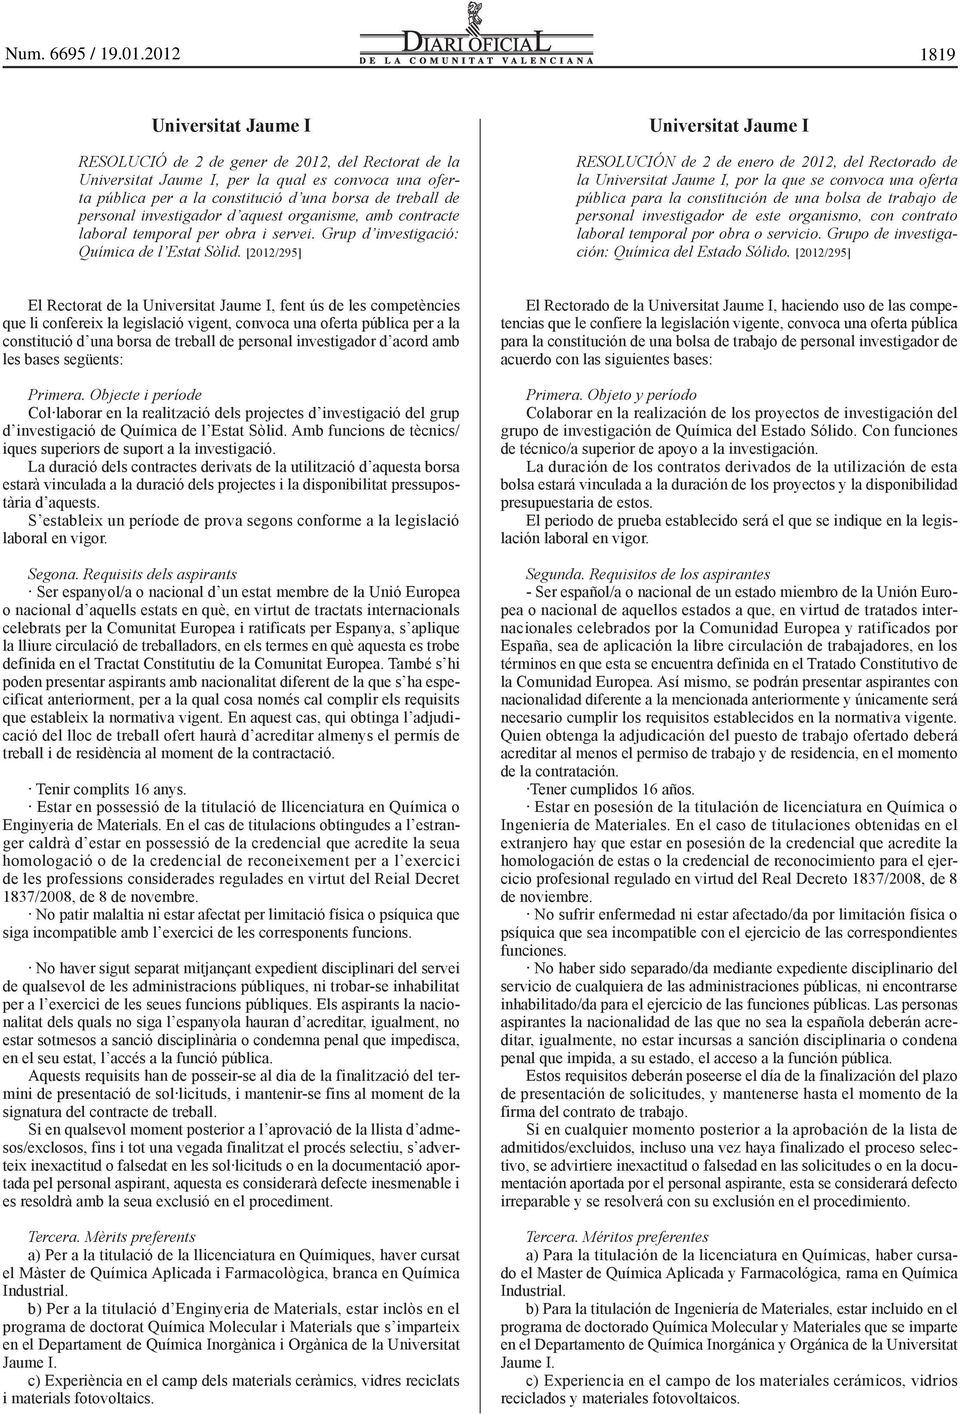 [2012/295] Universitat Jaume I RESOLUCIÓN de 2 de enero de 2012, del Rectorado de la Universitat Jaume I, por la que se convoca una oferta pública para la constitución de una bolsa de trabajo de